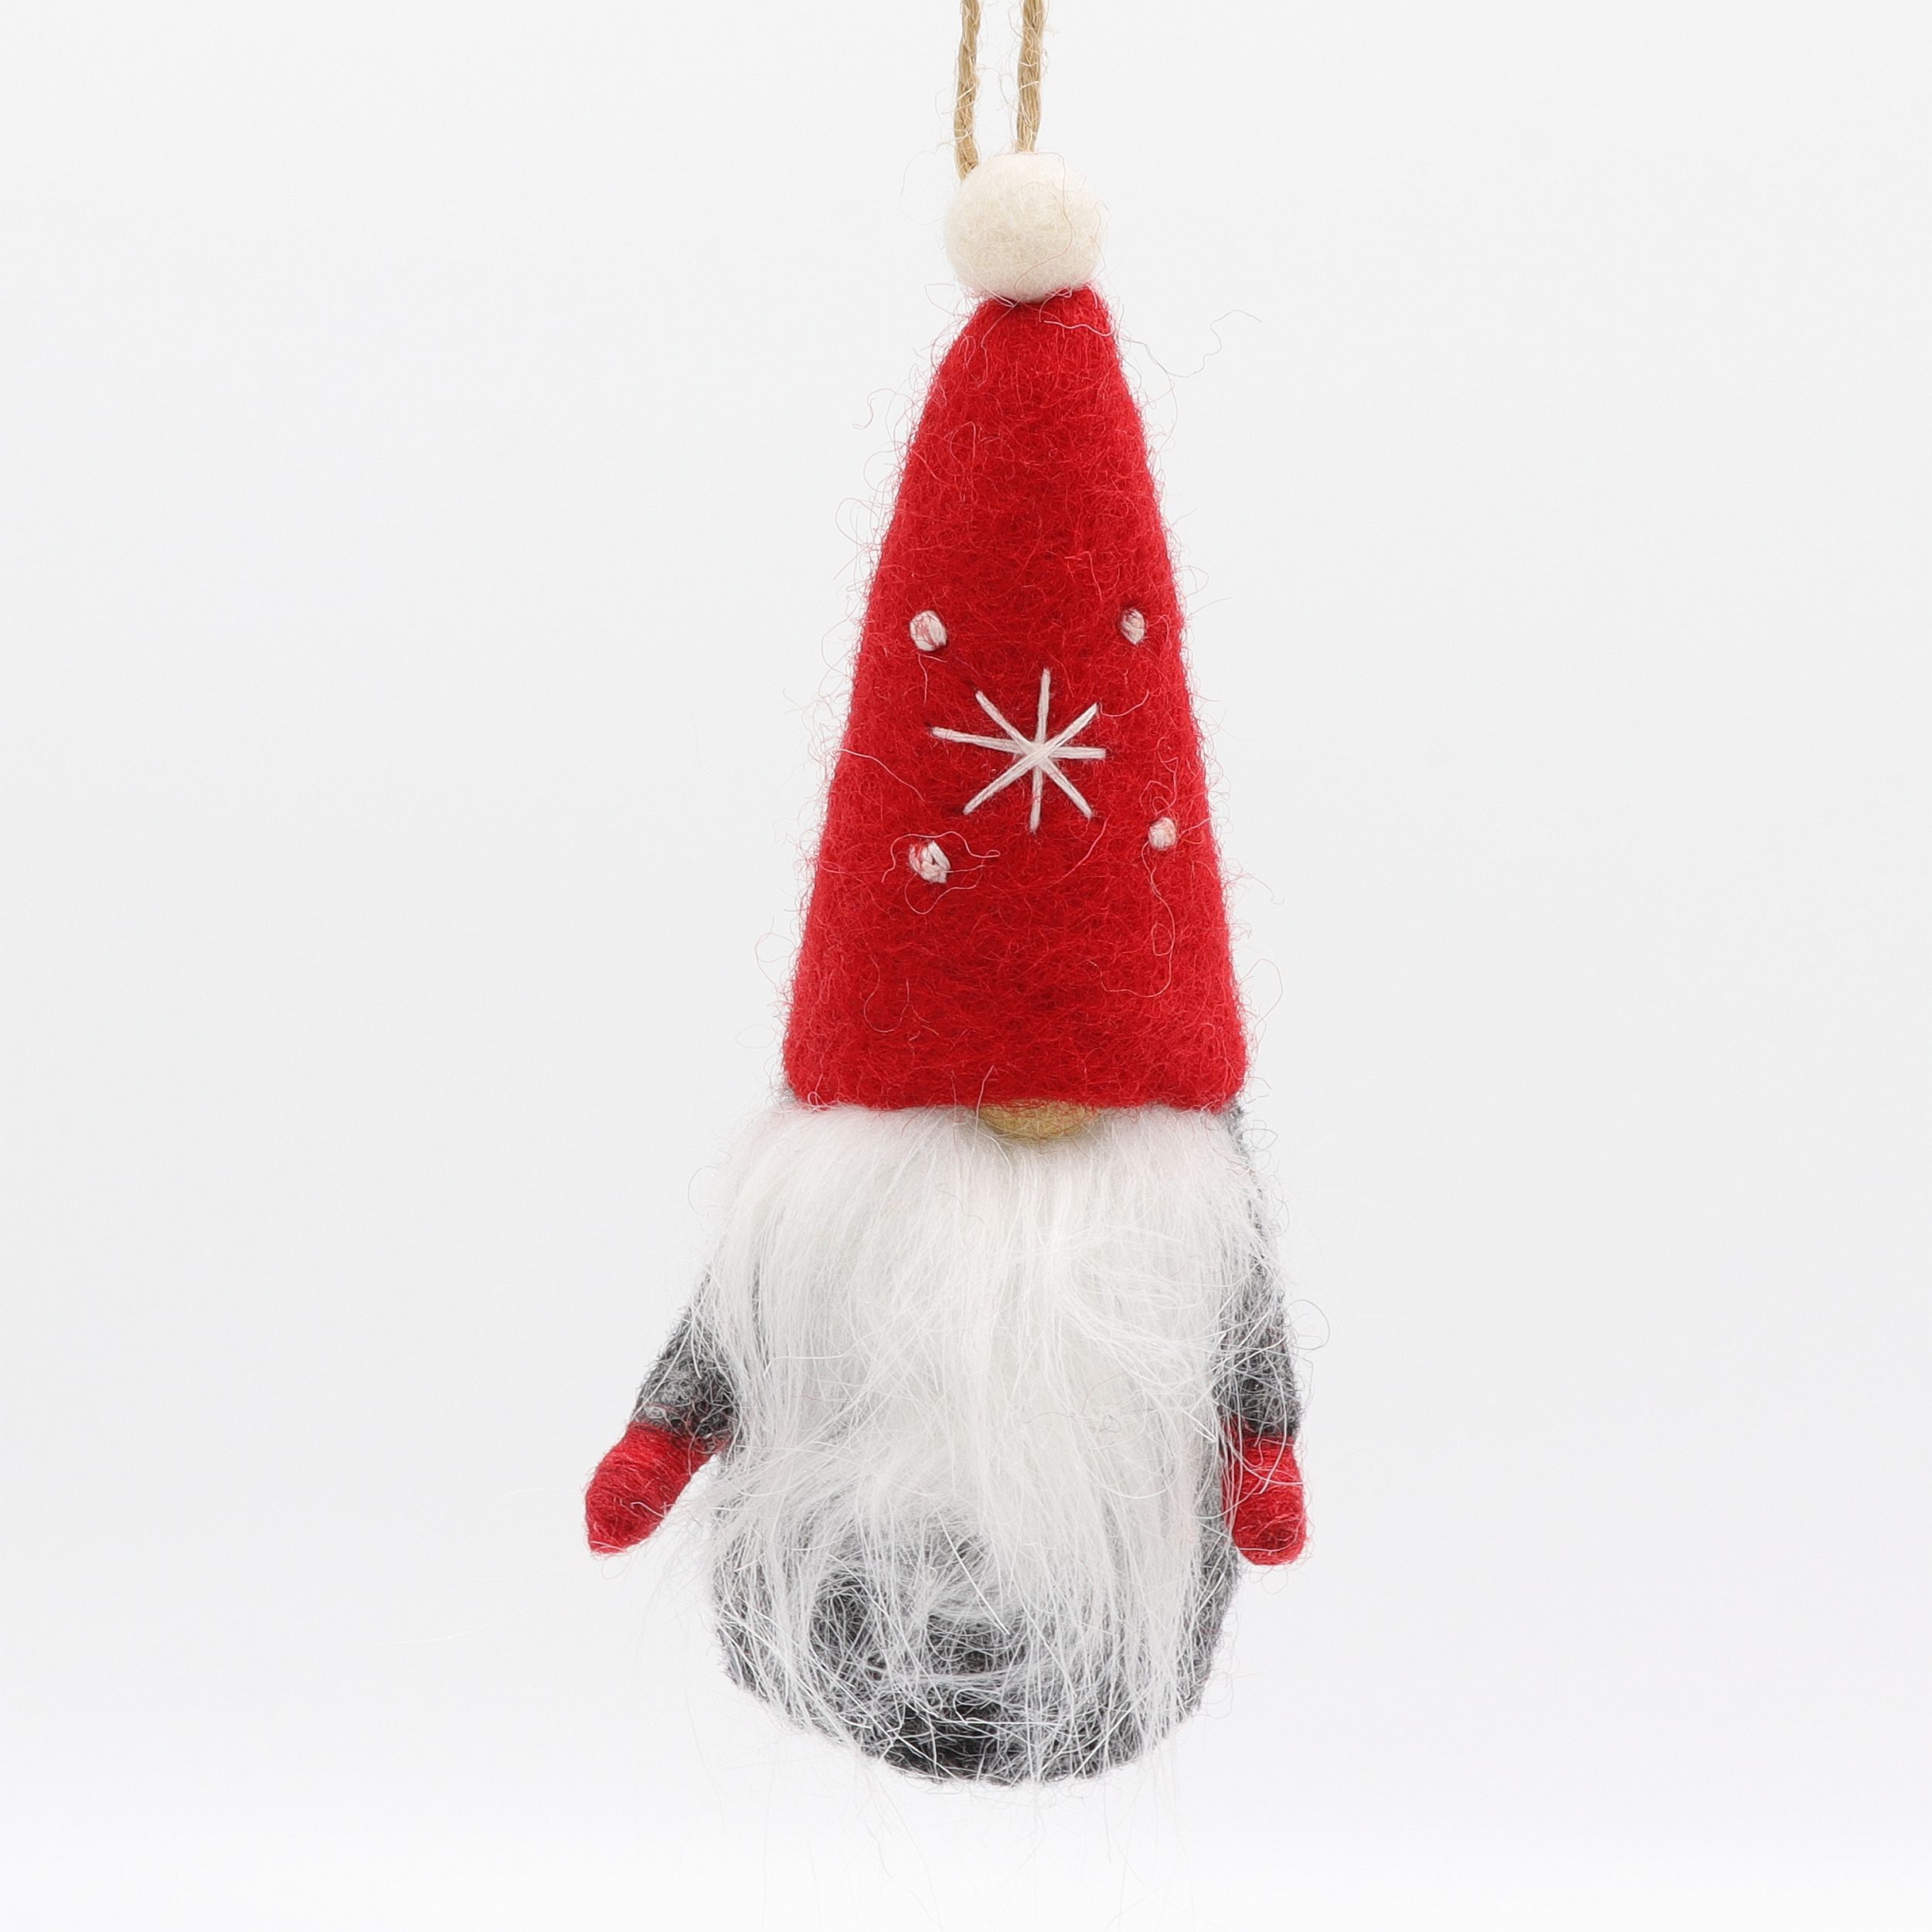 Weihnachtswichtel mit Bart und roter Zipfelmütze - Wichtel, Gnom, Kobold, Zwerg - Anhänger aus Filz - Geschenkanhänger oder Fensterschmuck - echte Handarbeit und fair gehandelt